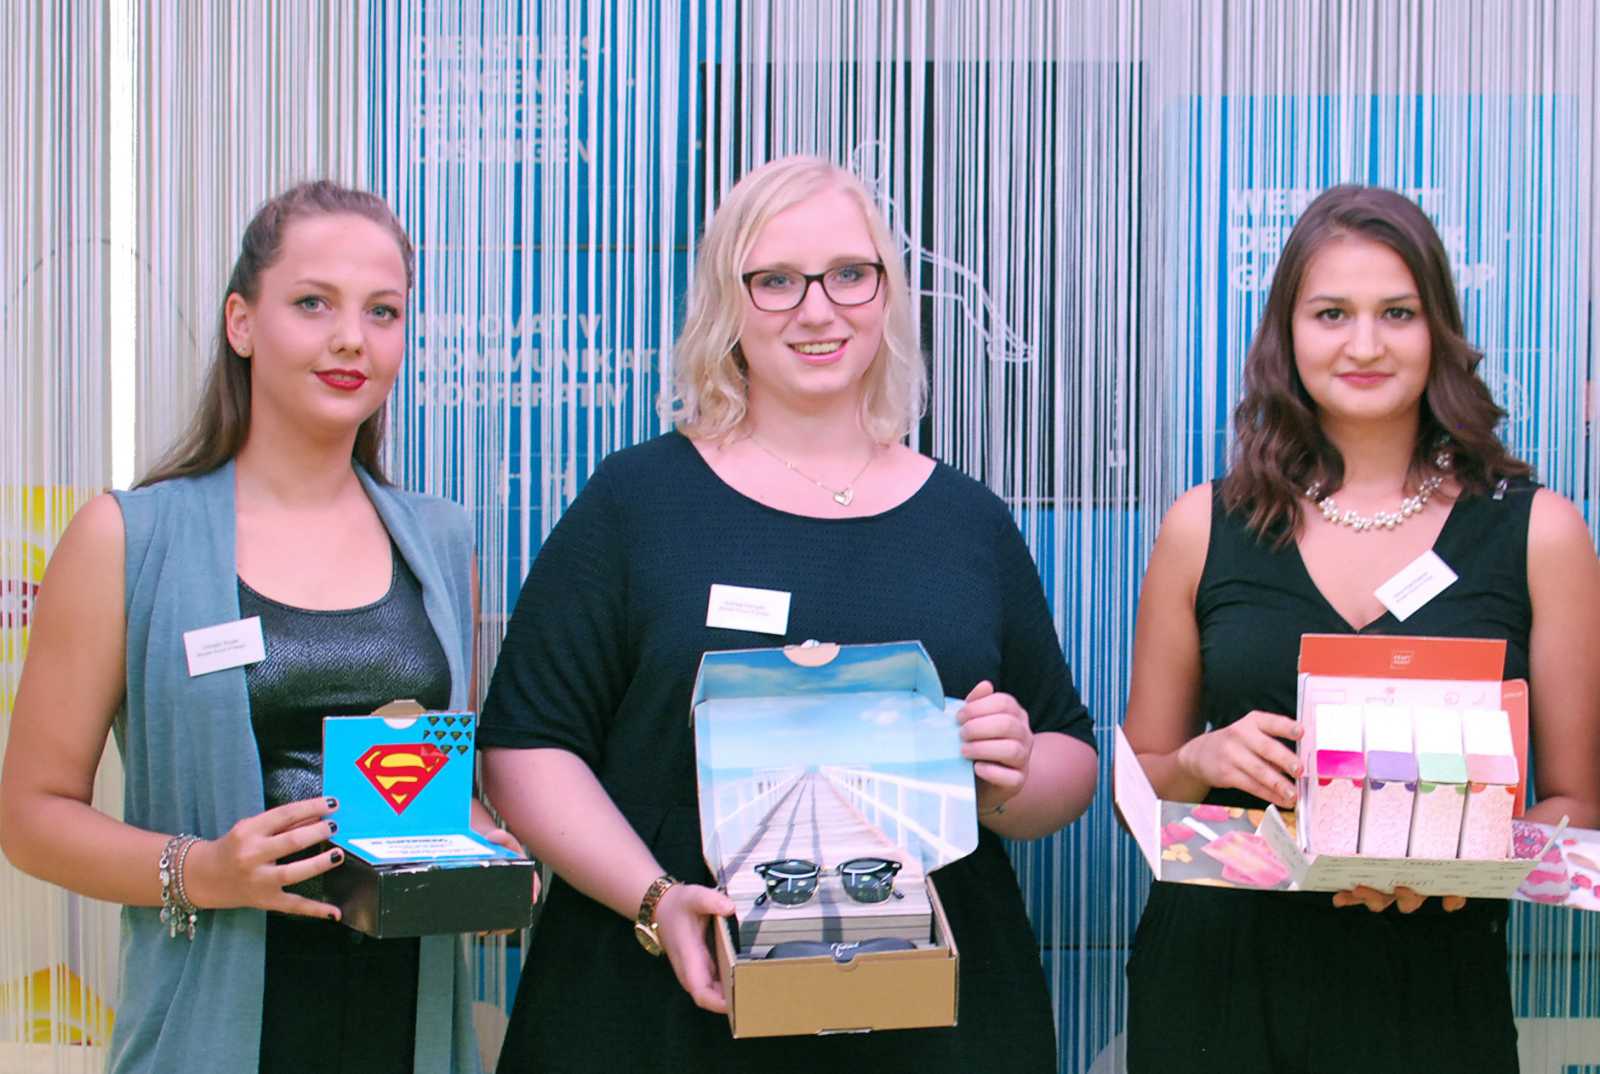 Sie gehörten zu den kreativsten Köpfen beim STI Design Award und heimsten drei von vier möglichen Preisen ein: Christin Kruse, Anthea Kemper und Alina Koschlakow vom Fachbereich Design der FH Münster (v.l.). (Foto: STI-Group)